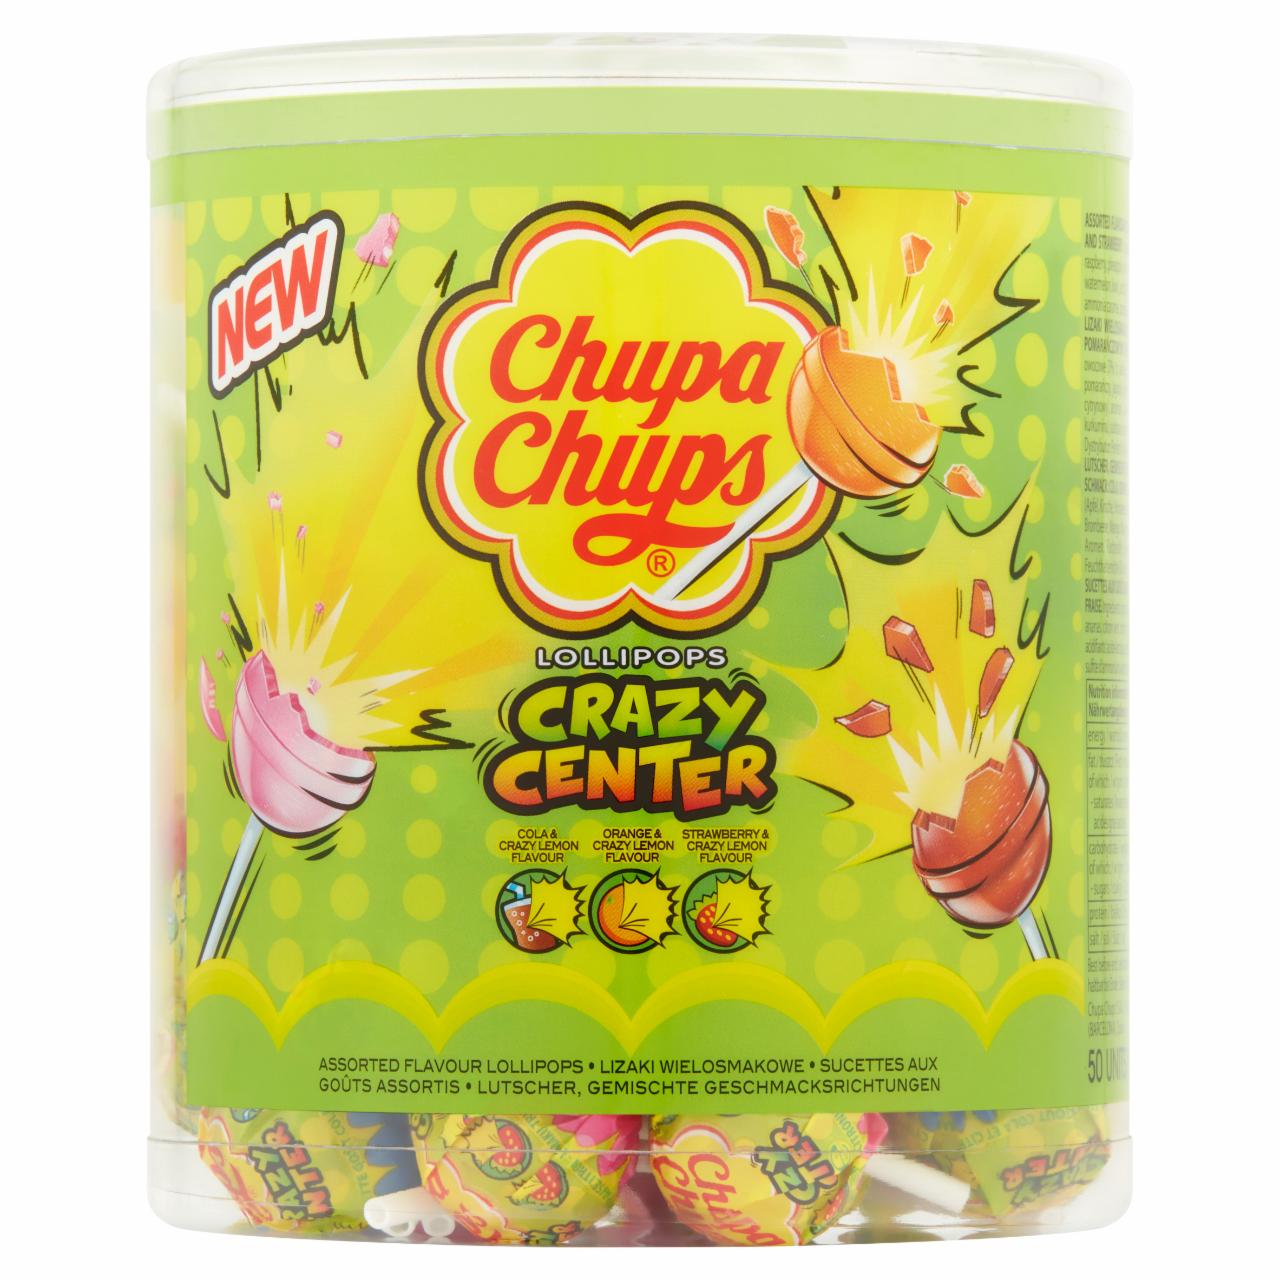 Zdjęcia - Chupa Chups Crazy Center Lizaki wielosmakowe z nadzieniem o smaku cytrynowym 600 g (50 sztuk)